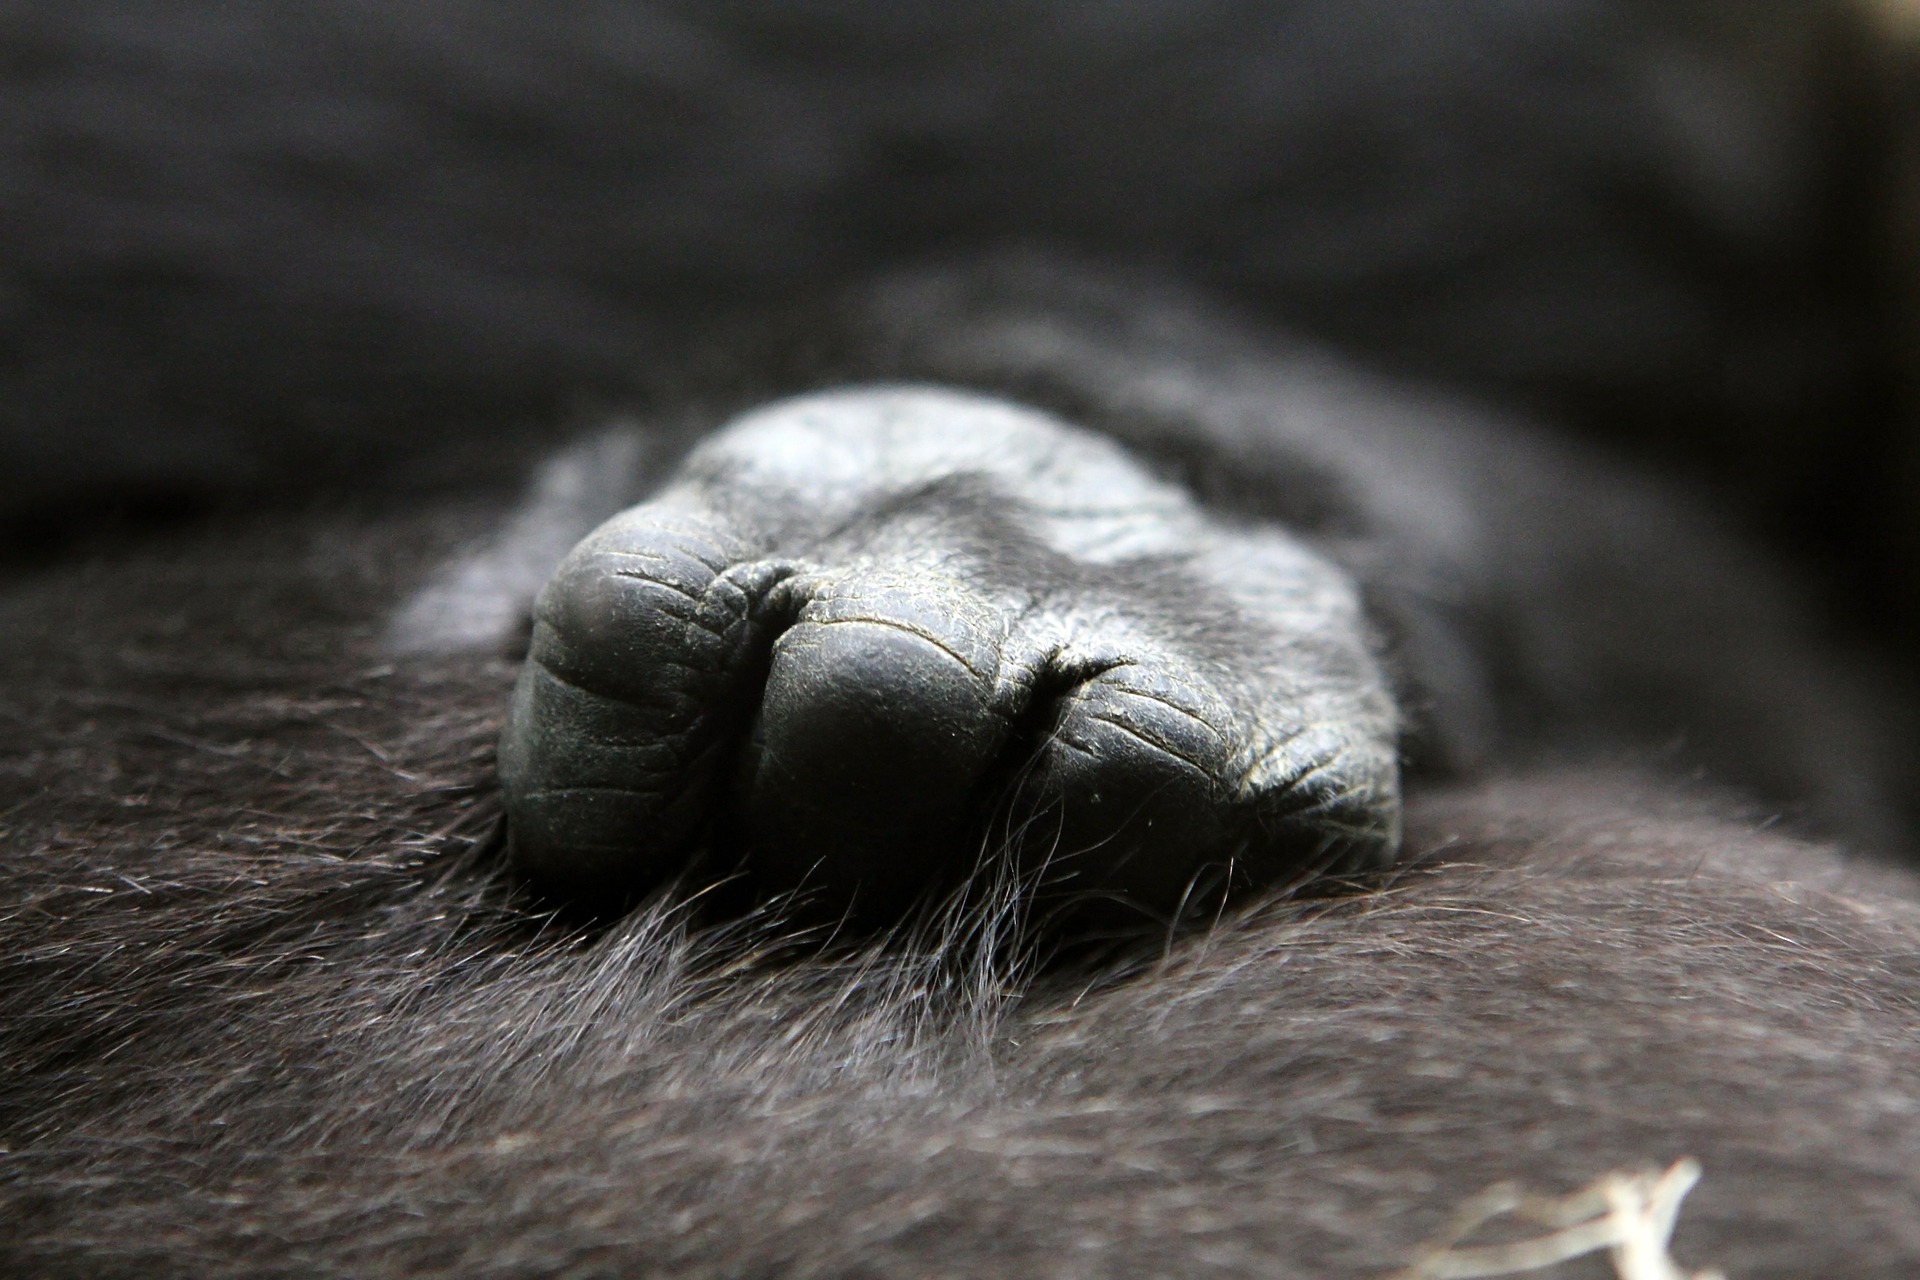 Gorilla Hand